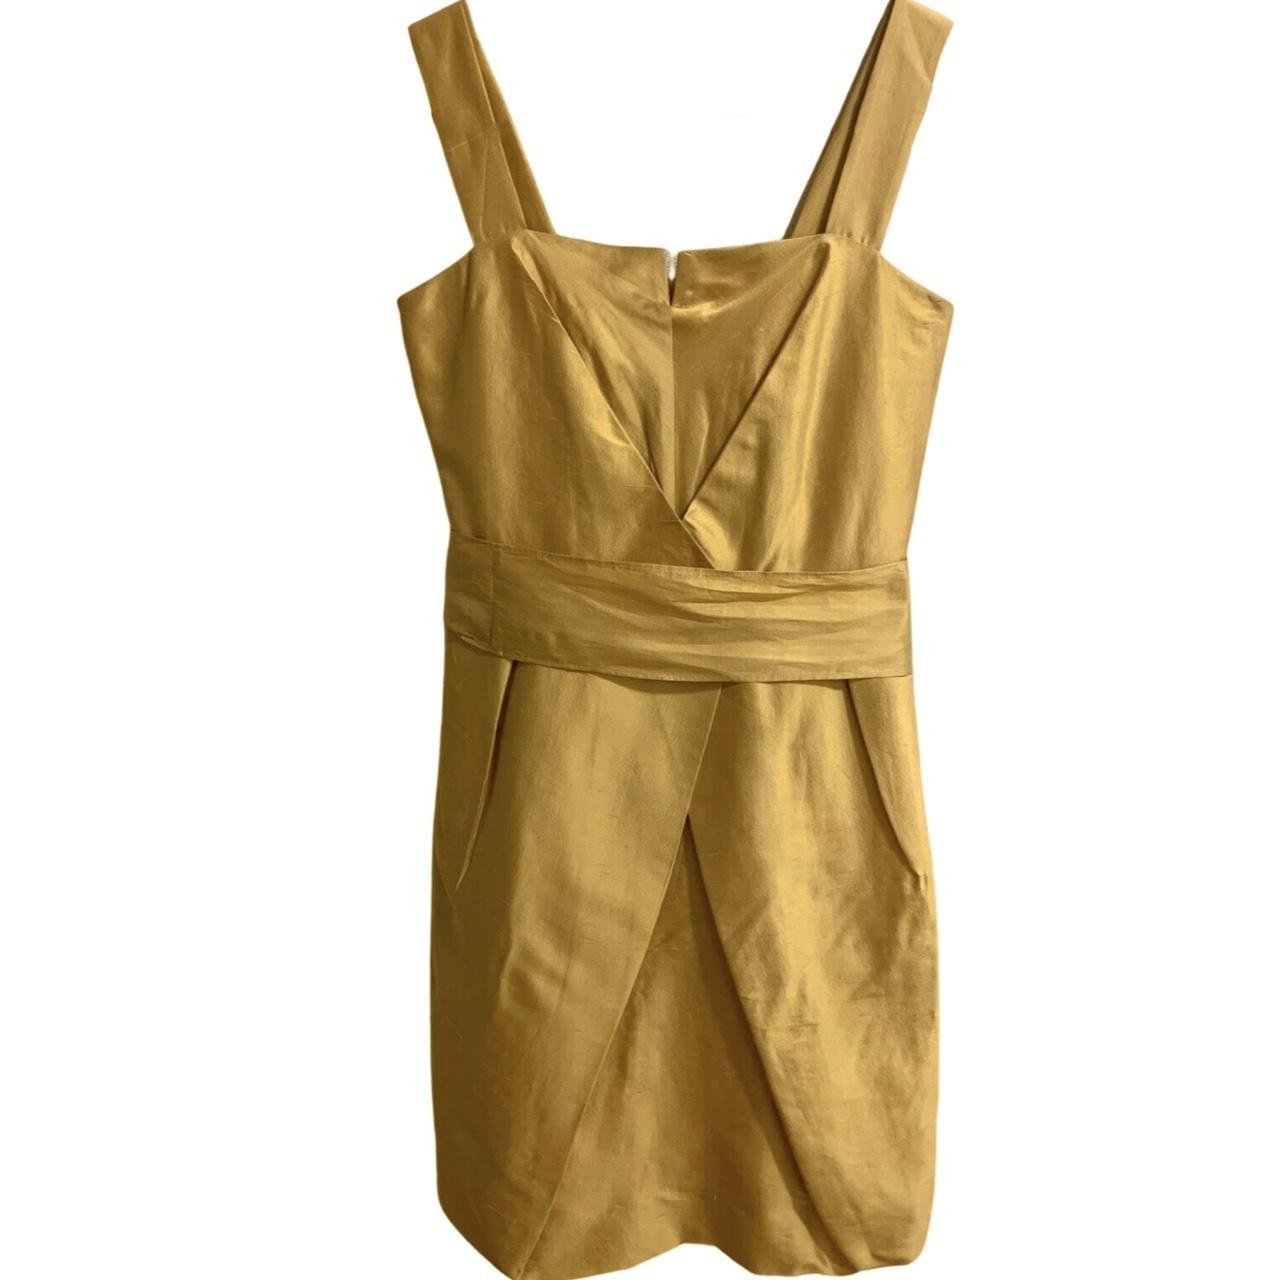 Max Mara Women's Gold and Yellow Dress